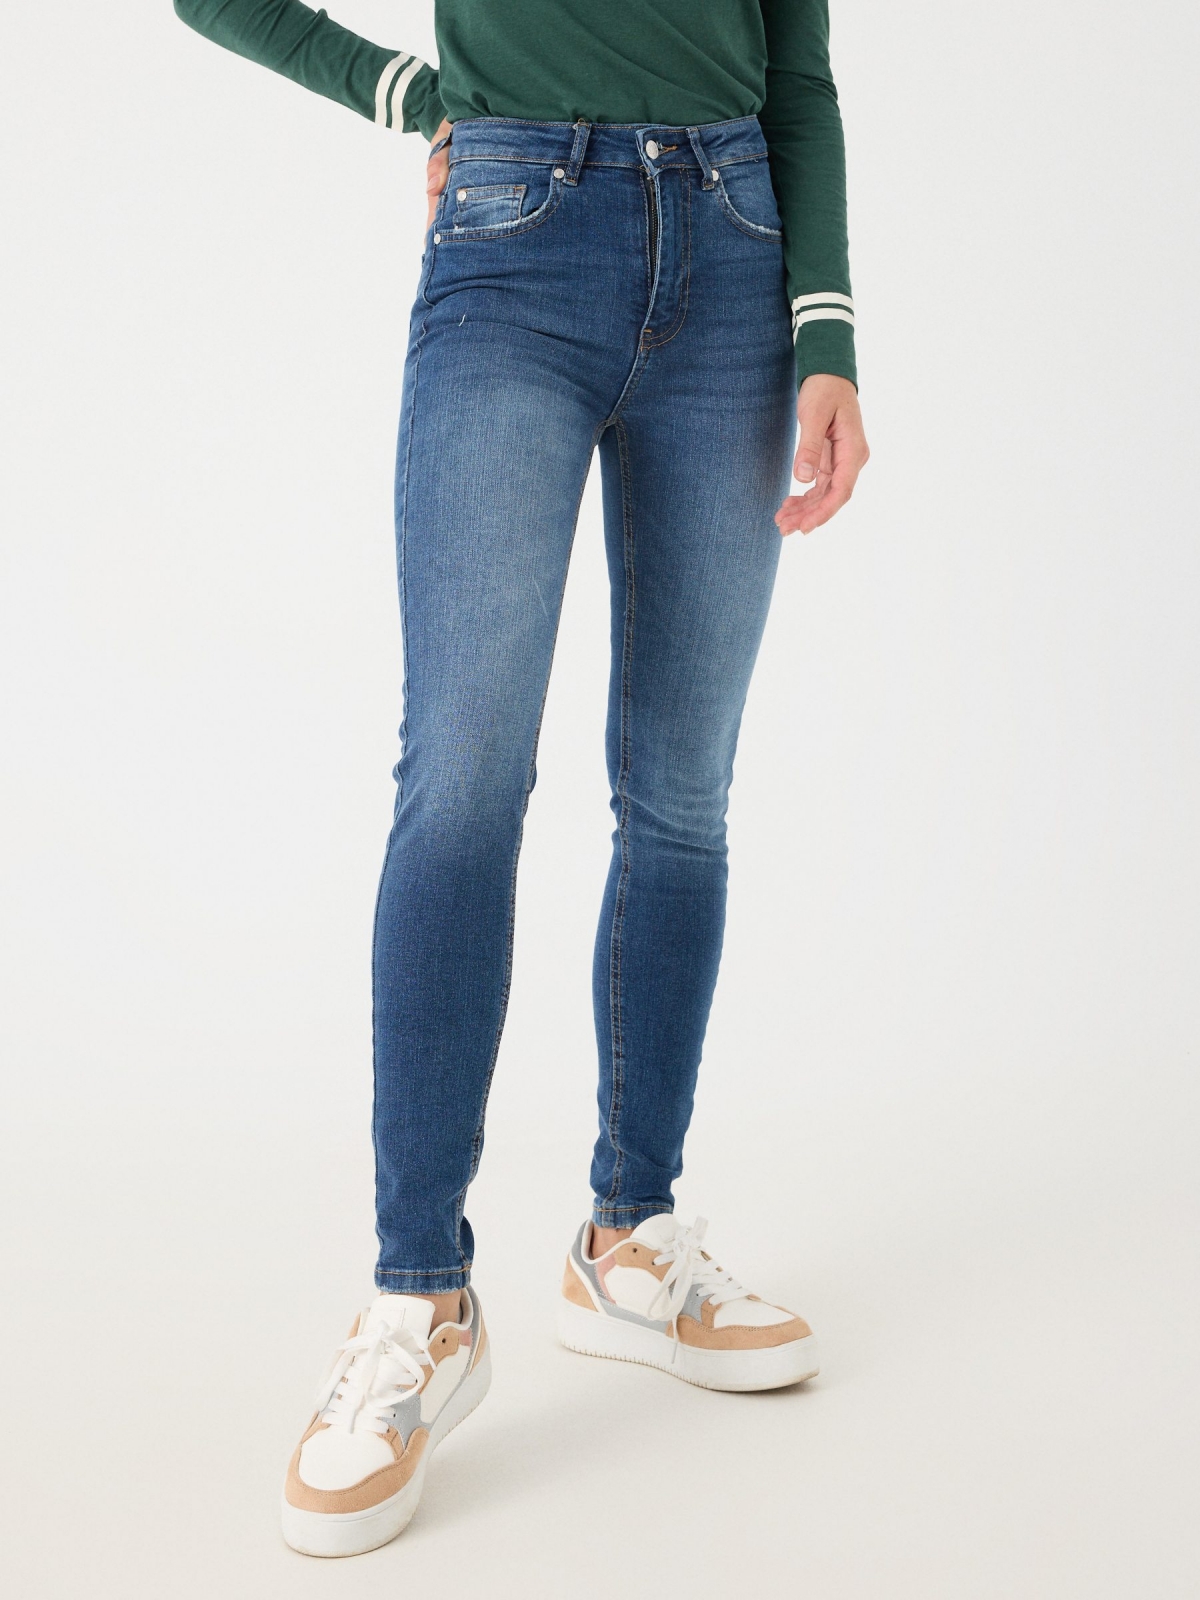 Jeans skinny cintura alta efeito lavado azul marinho vista meia frontal